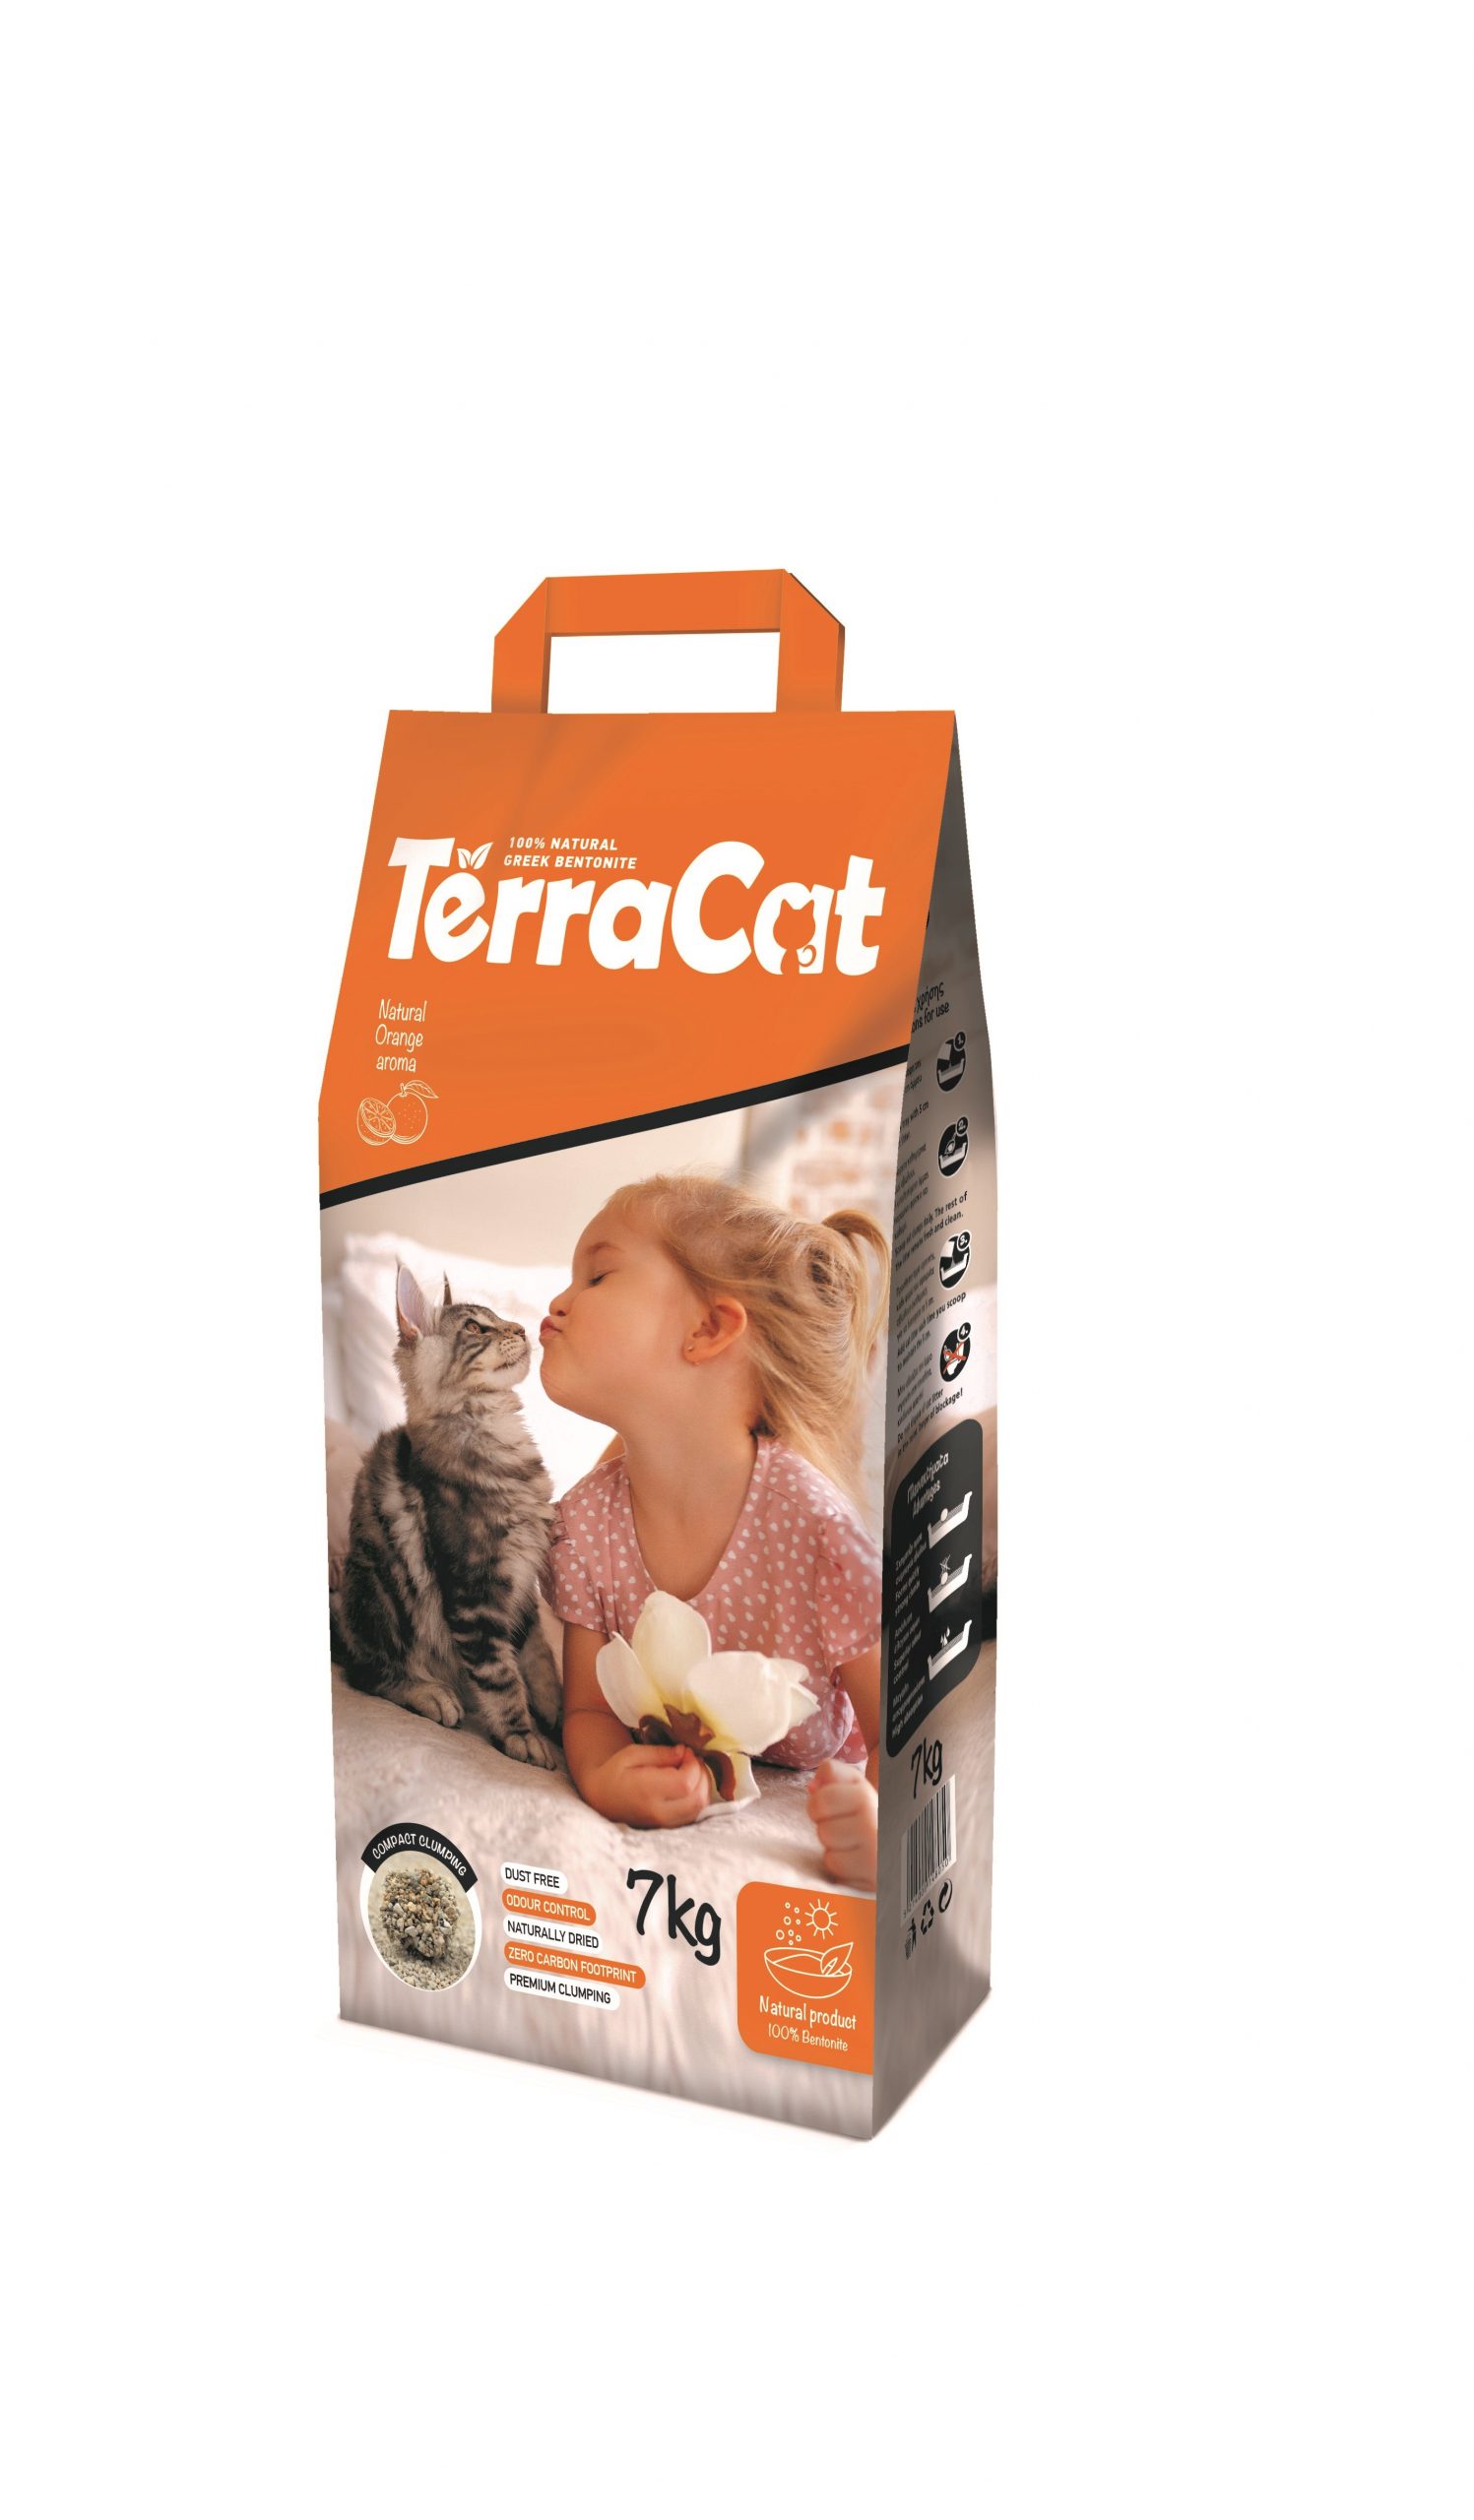 Terra Cat with orange_7 kg